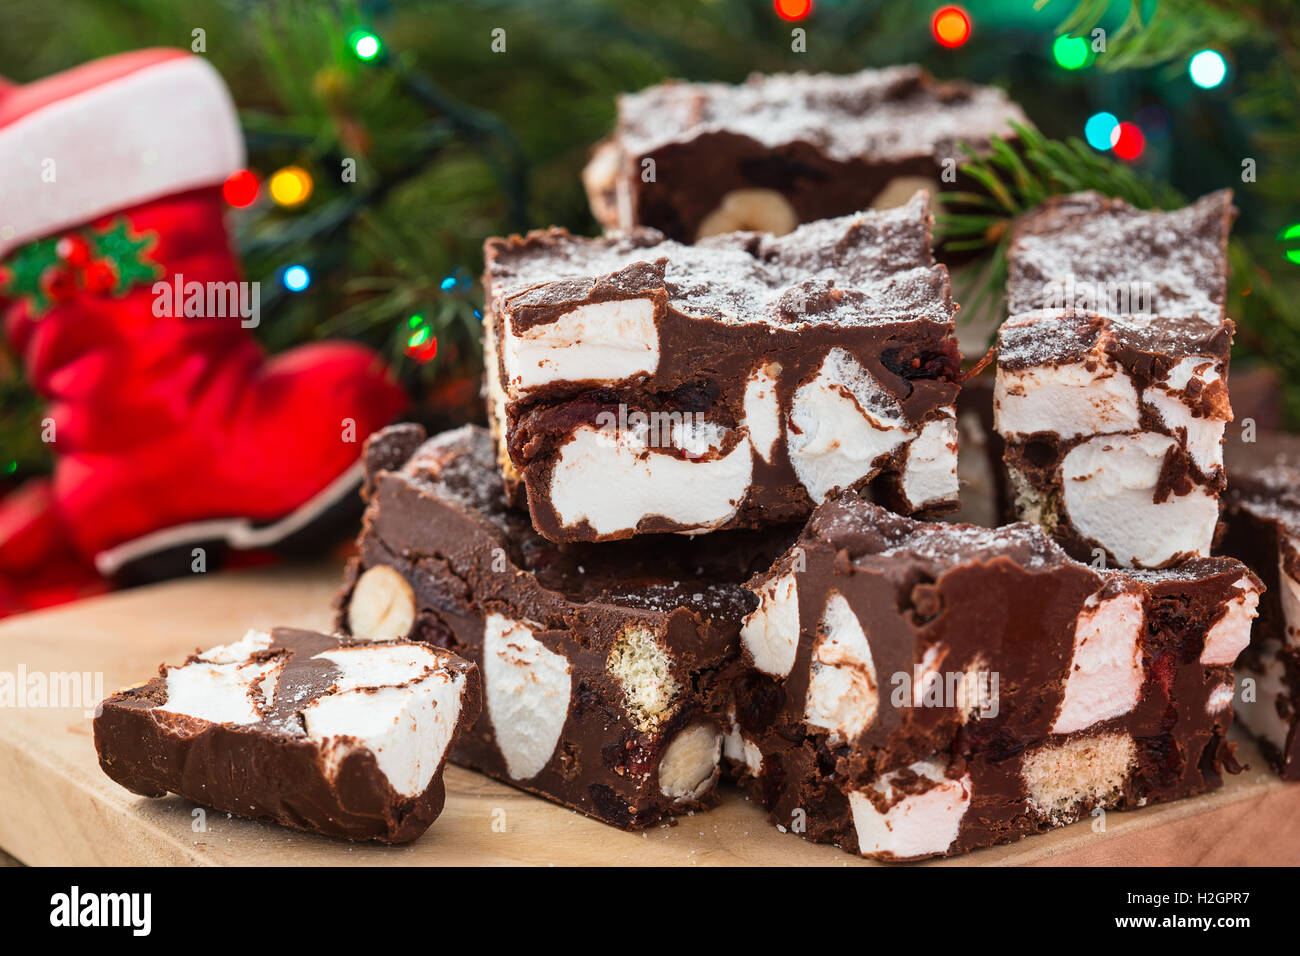 Steiniger Weg Crunch Bars, Weihnachten Dessert mit Schokolade, Eibisch, Haselnuss, Keks und glace Kirschen Stockfoto